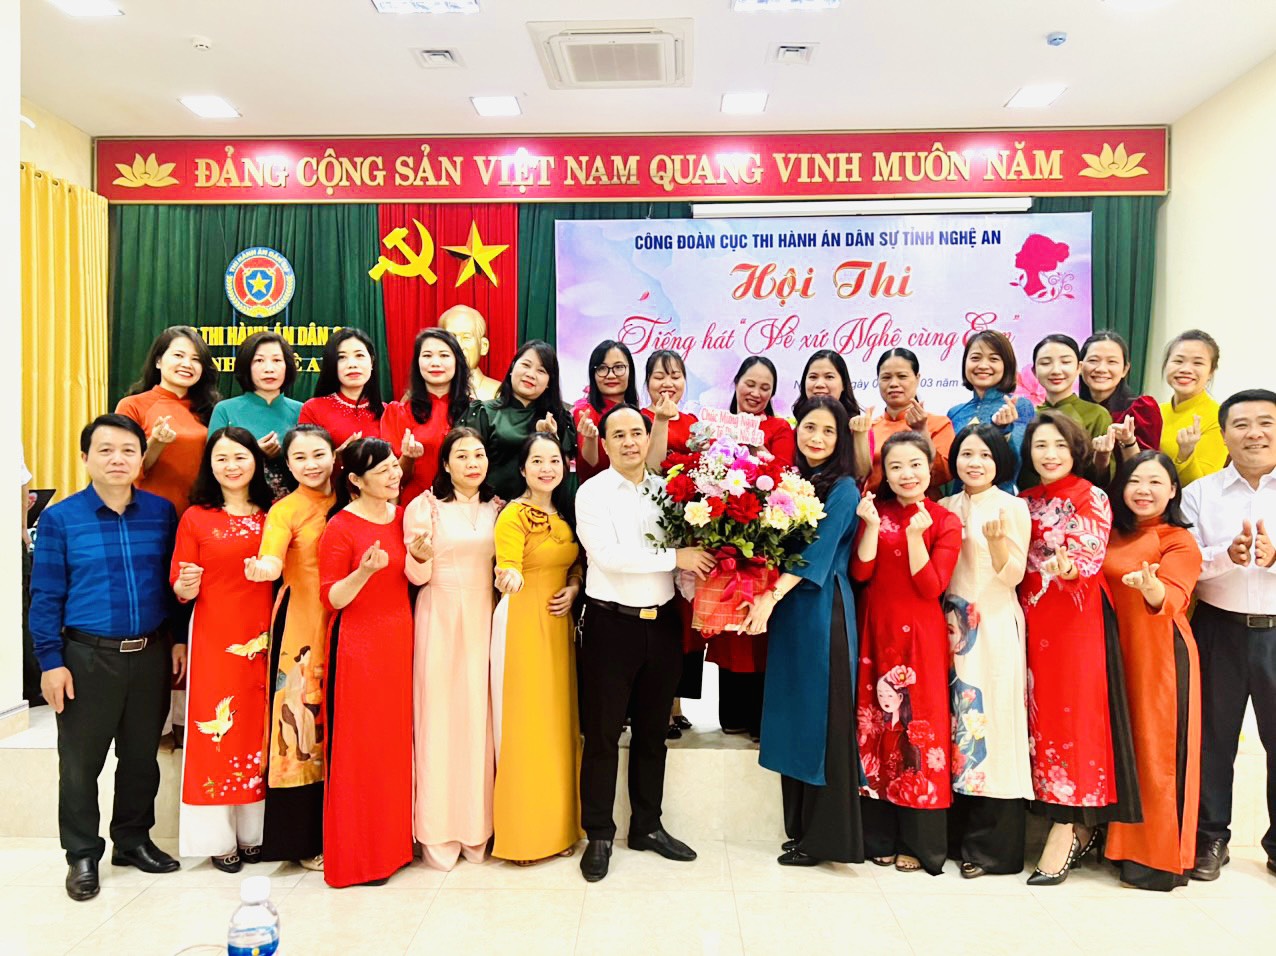 Công đoàn – Cơ quan Cục Thi hành án dân sự tỉnh Nghệ An tổ chức các hoạt động sôi nổi nhân dịp kỷ niệm 113 năm Ngày Quốc tế phụ nữ 8/3